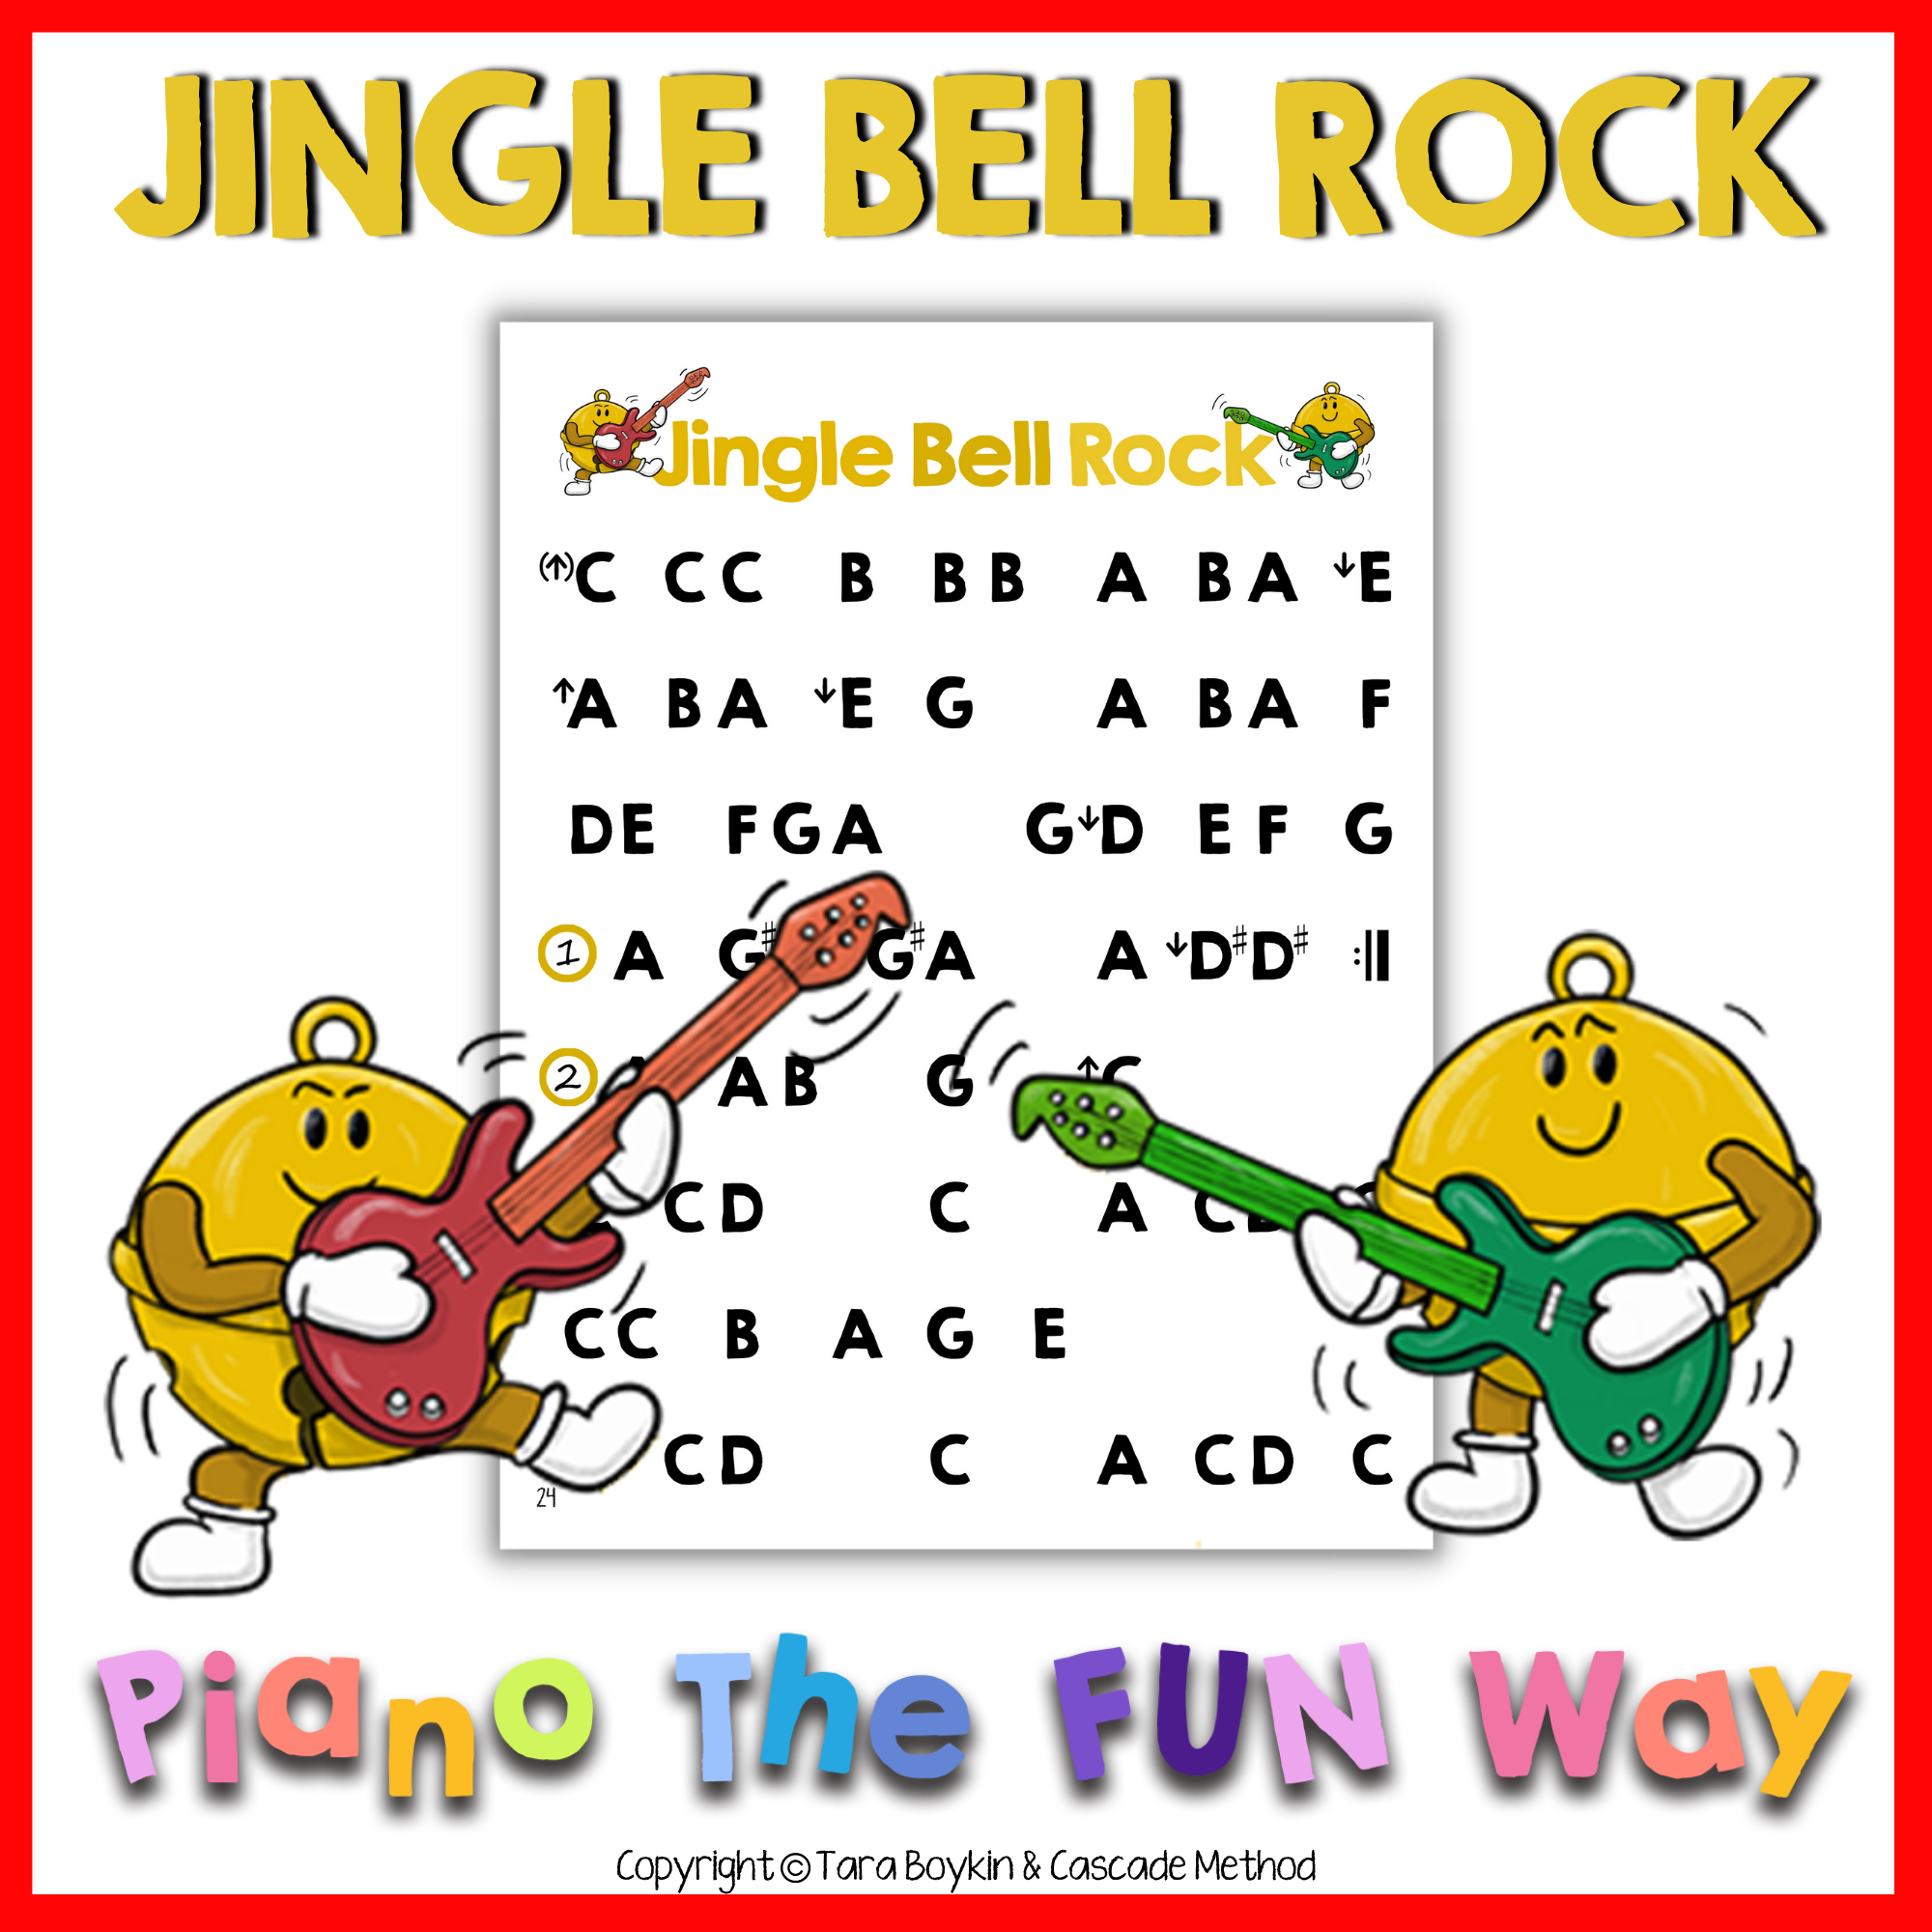 Jingle Bell Rock - Cascade Method